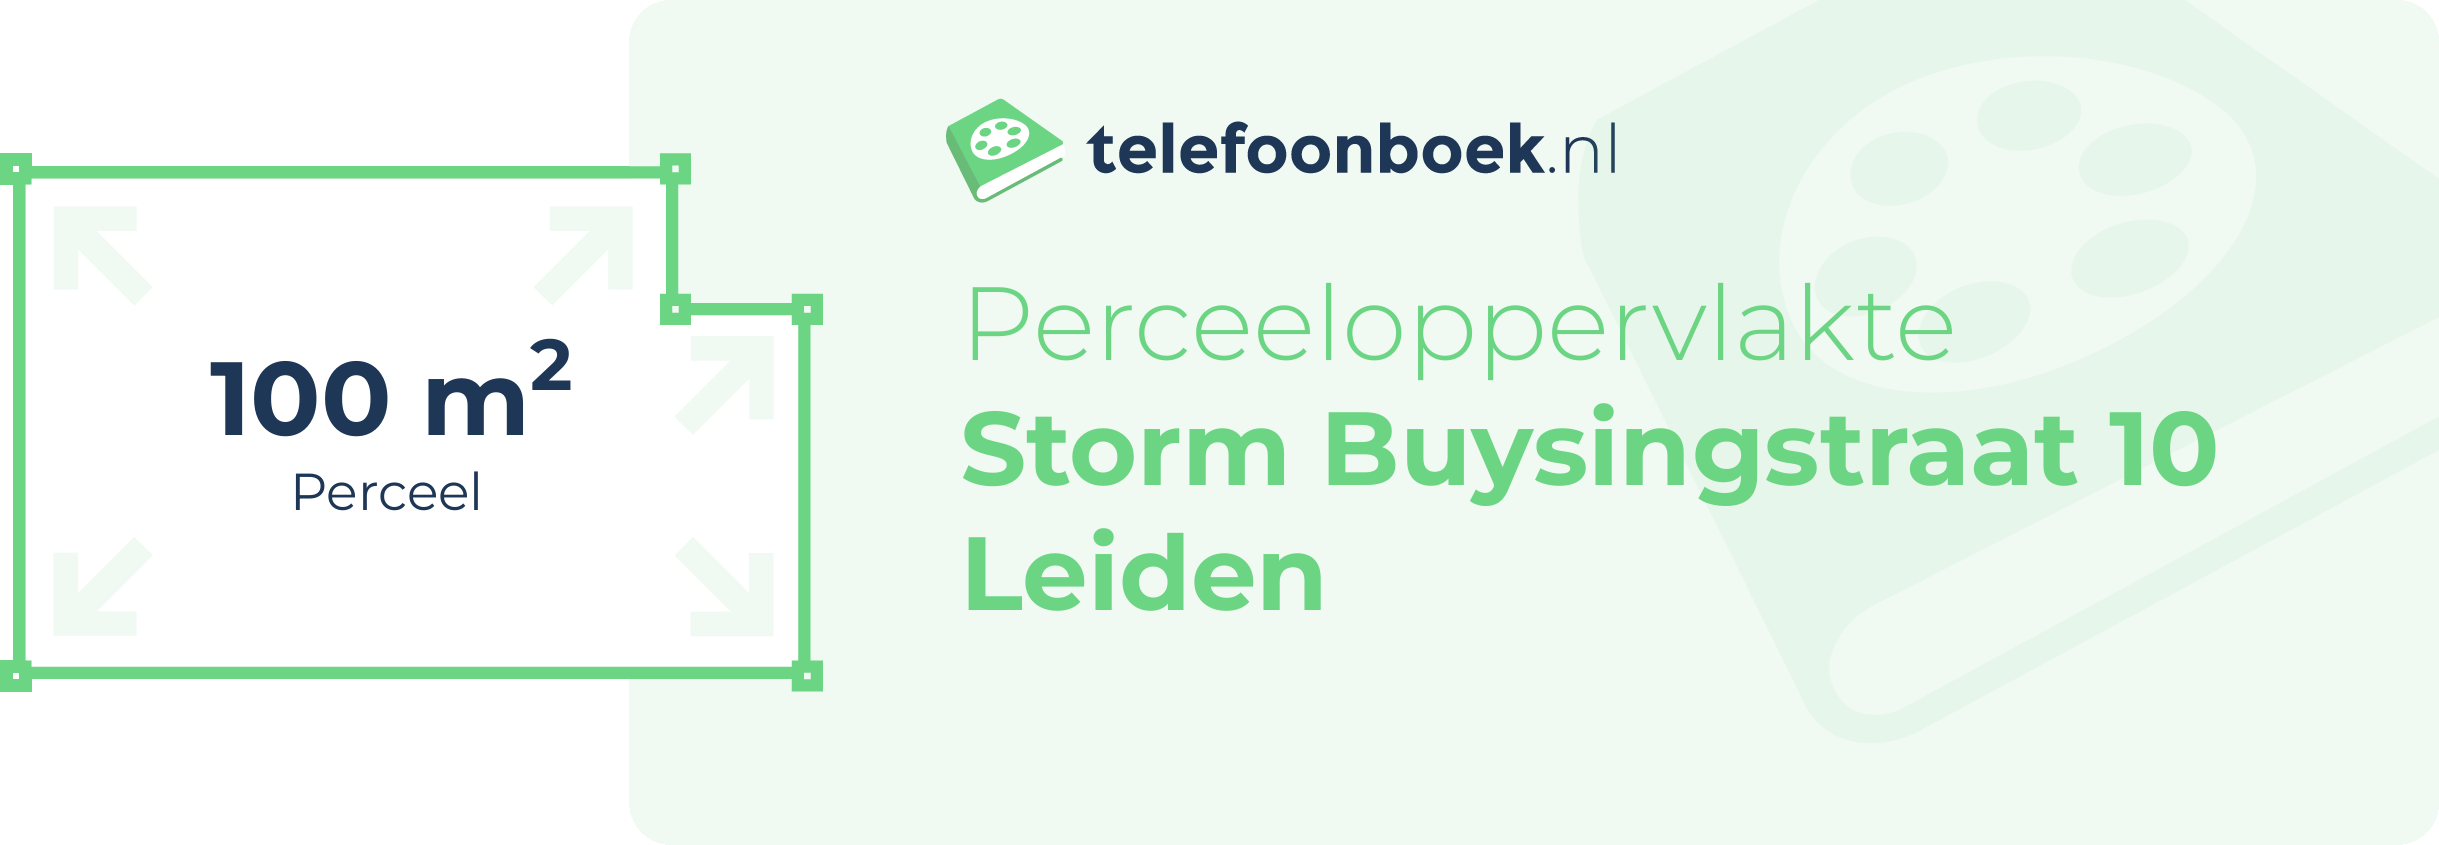 Perceeloppervlakte Storm Buysingstraat 10 Leiden